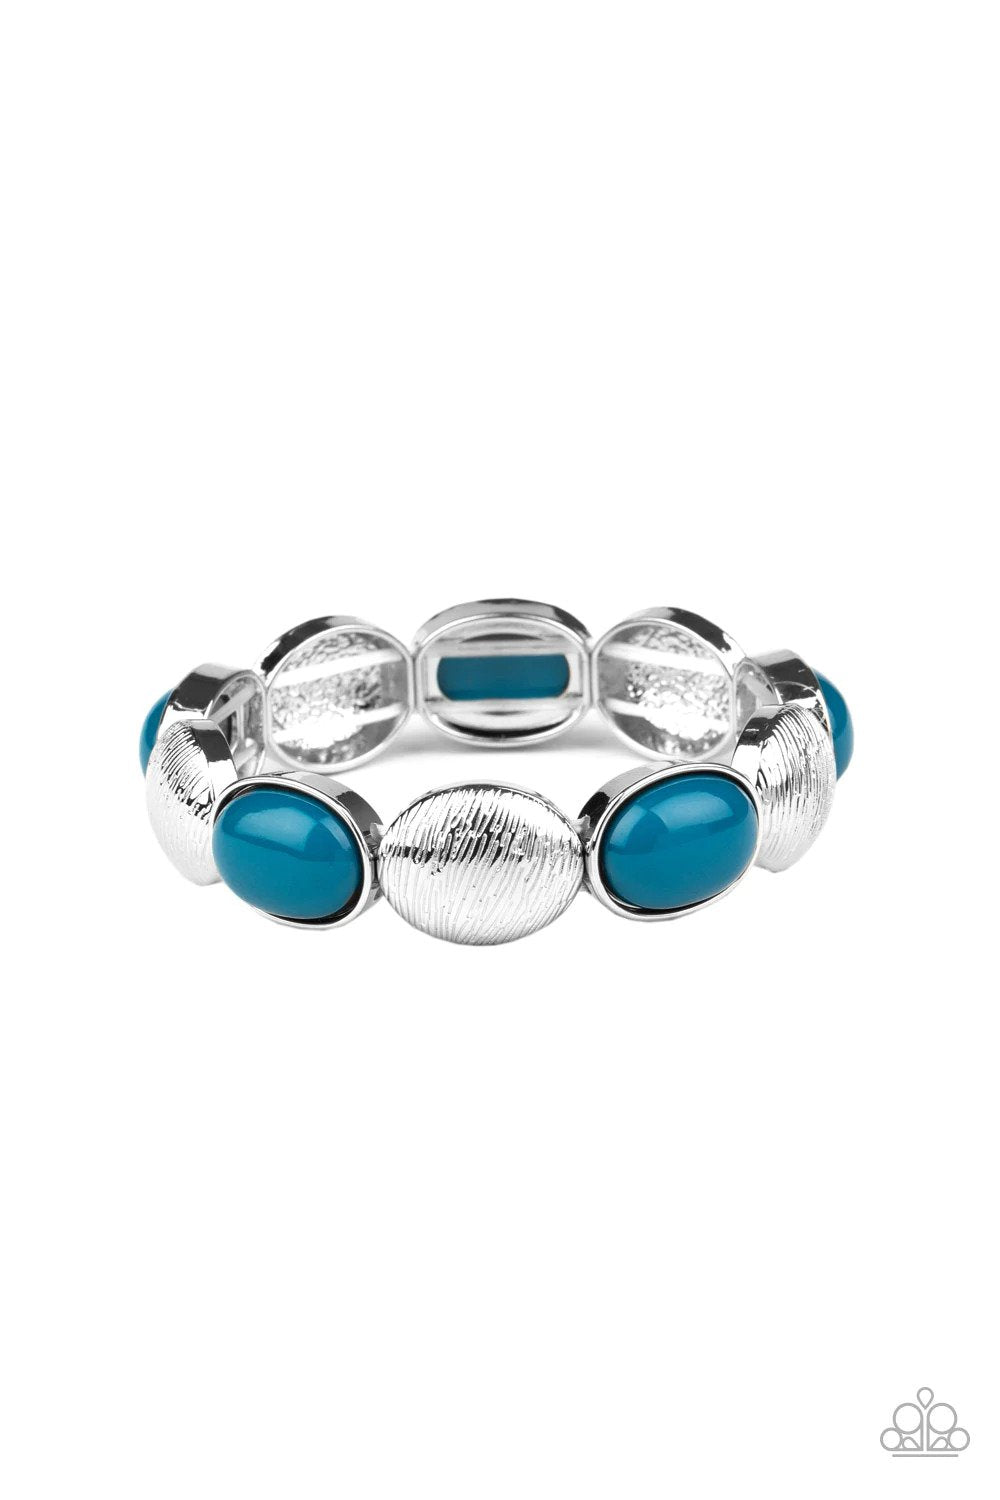 Decadently Dewy Blue Bracelet - Paparazzi Accessories- lightbox - CarasShop.com - $5 Jewelry by Cara Jewels